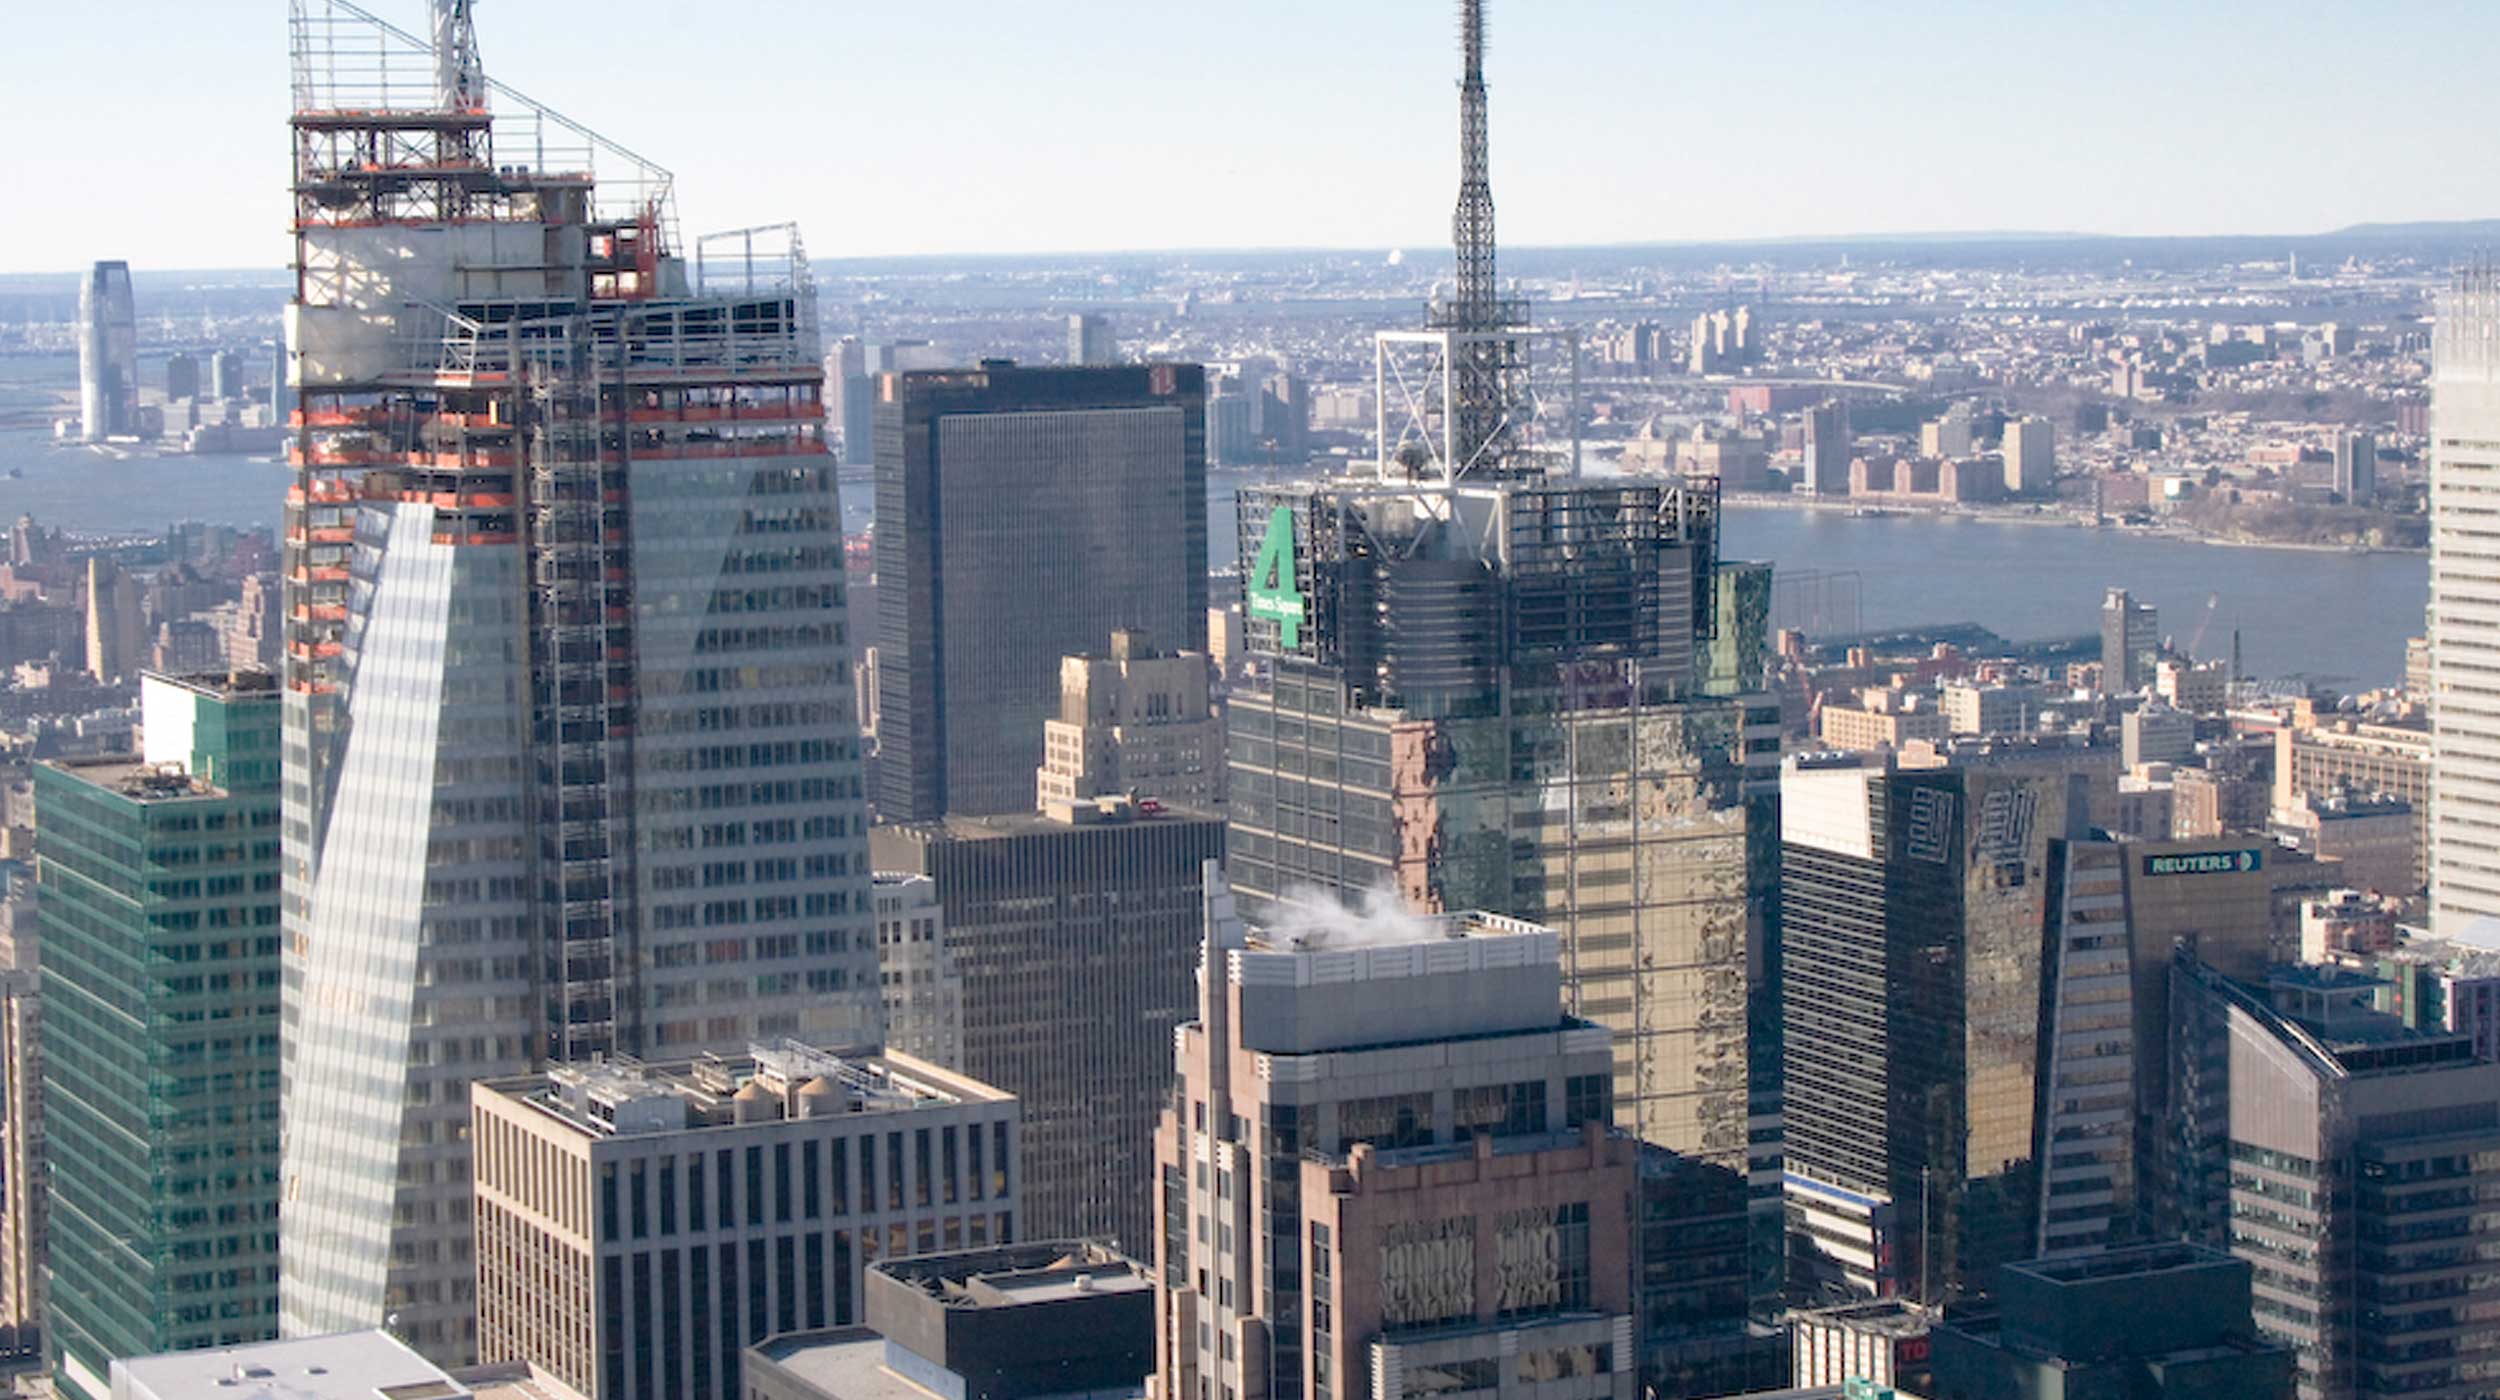 Wieżowiec o wysokości 300 m, w którym mieści się siedziba Banku Amerykańskiego, zajmuje powierzchnię 200.000 m².